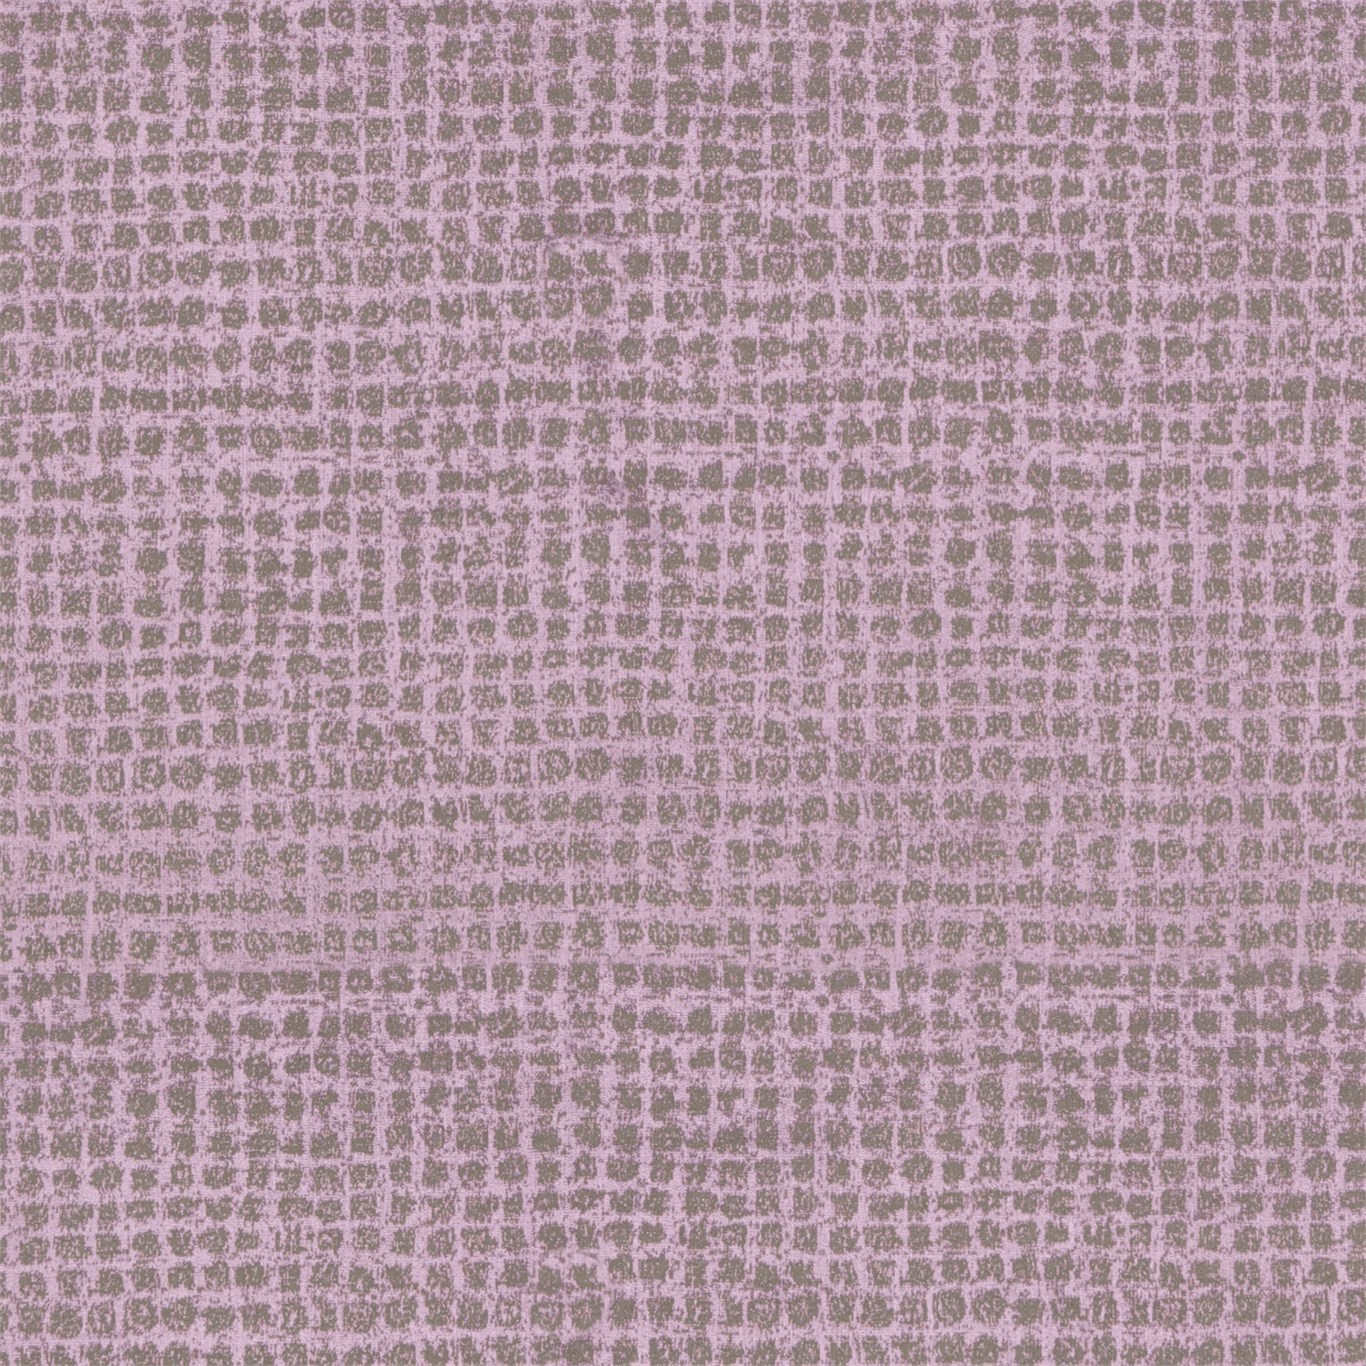 Trezzini Amethyst Fabric by HAR